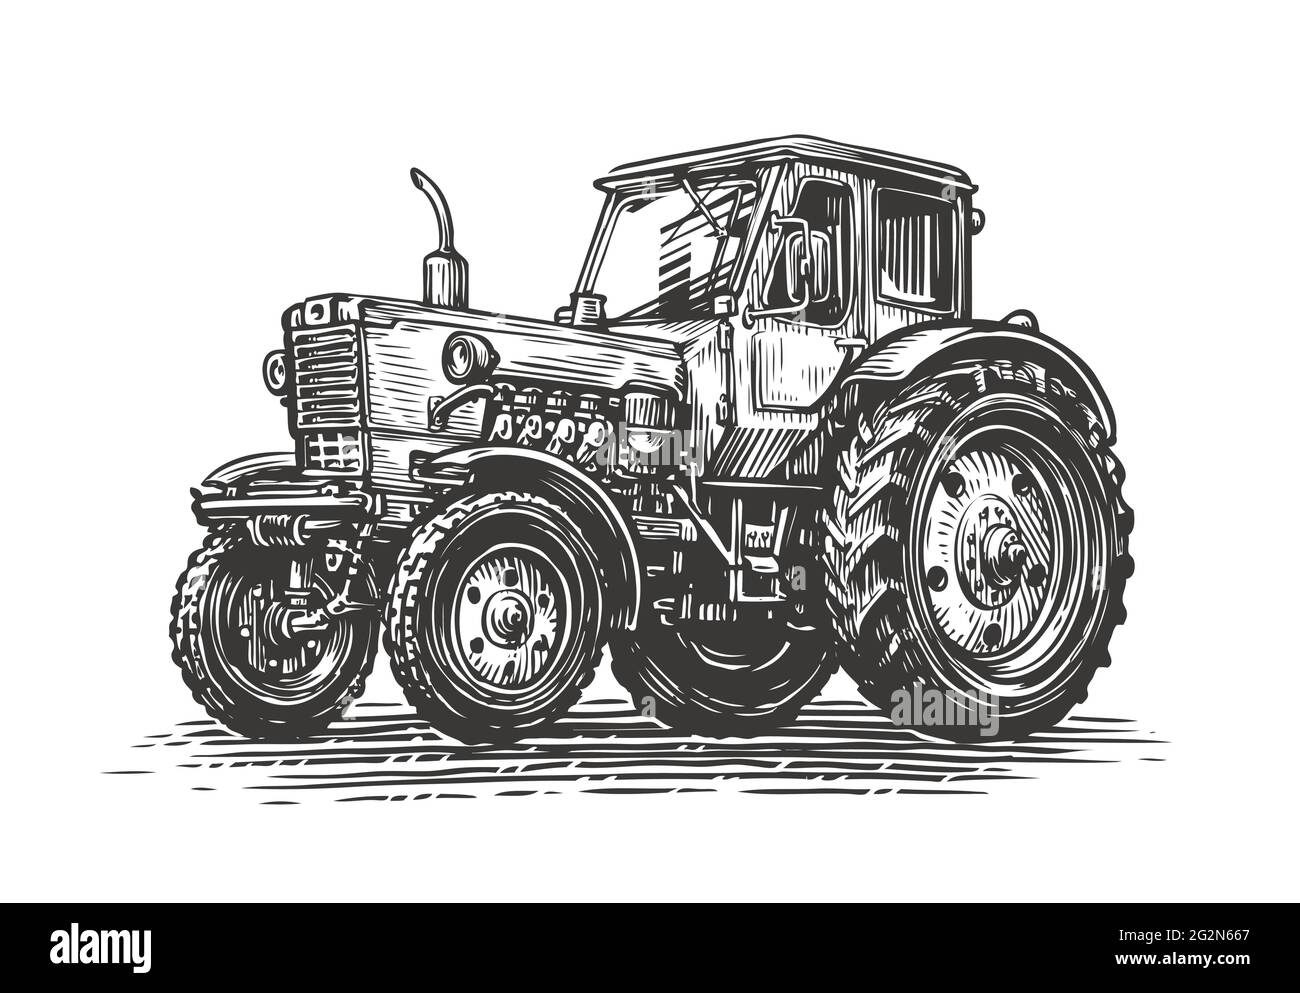 Skizze für den Traktor auf dem Bauernhof. Agrarindustrie, landwirtschaftliches Konzept. Vintage-Vektorgrafik Stock Vektor